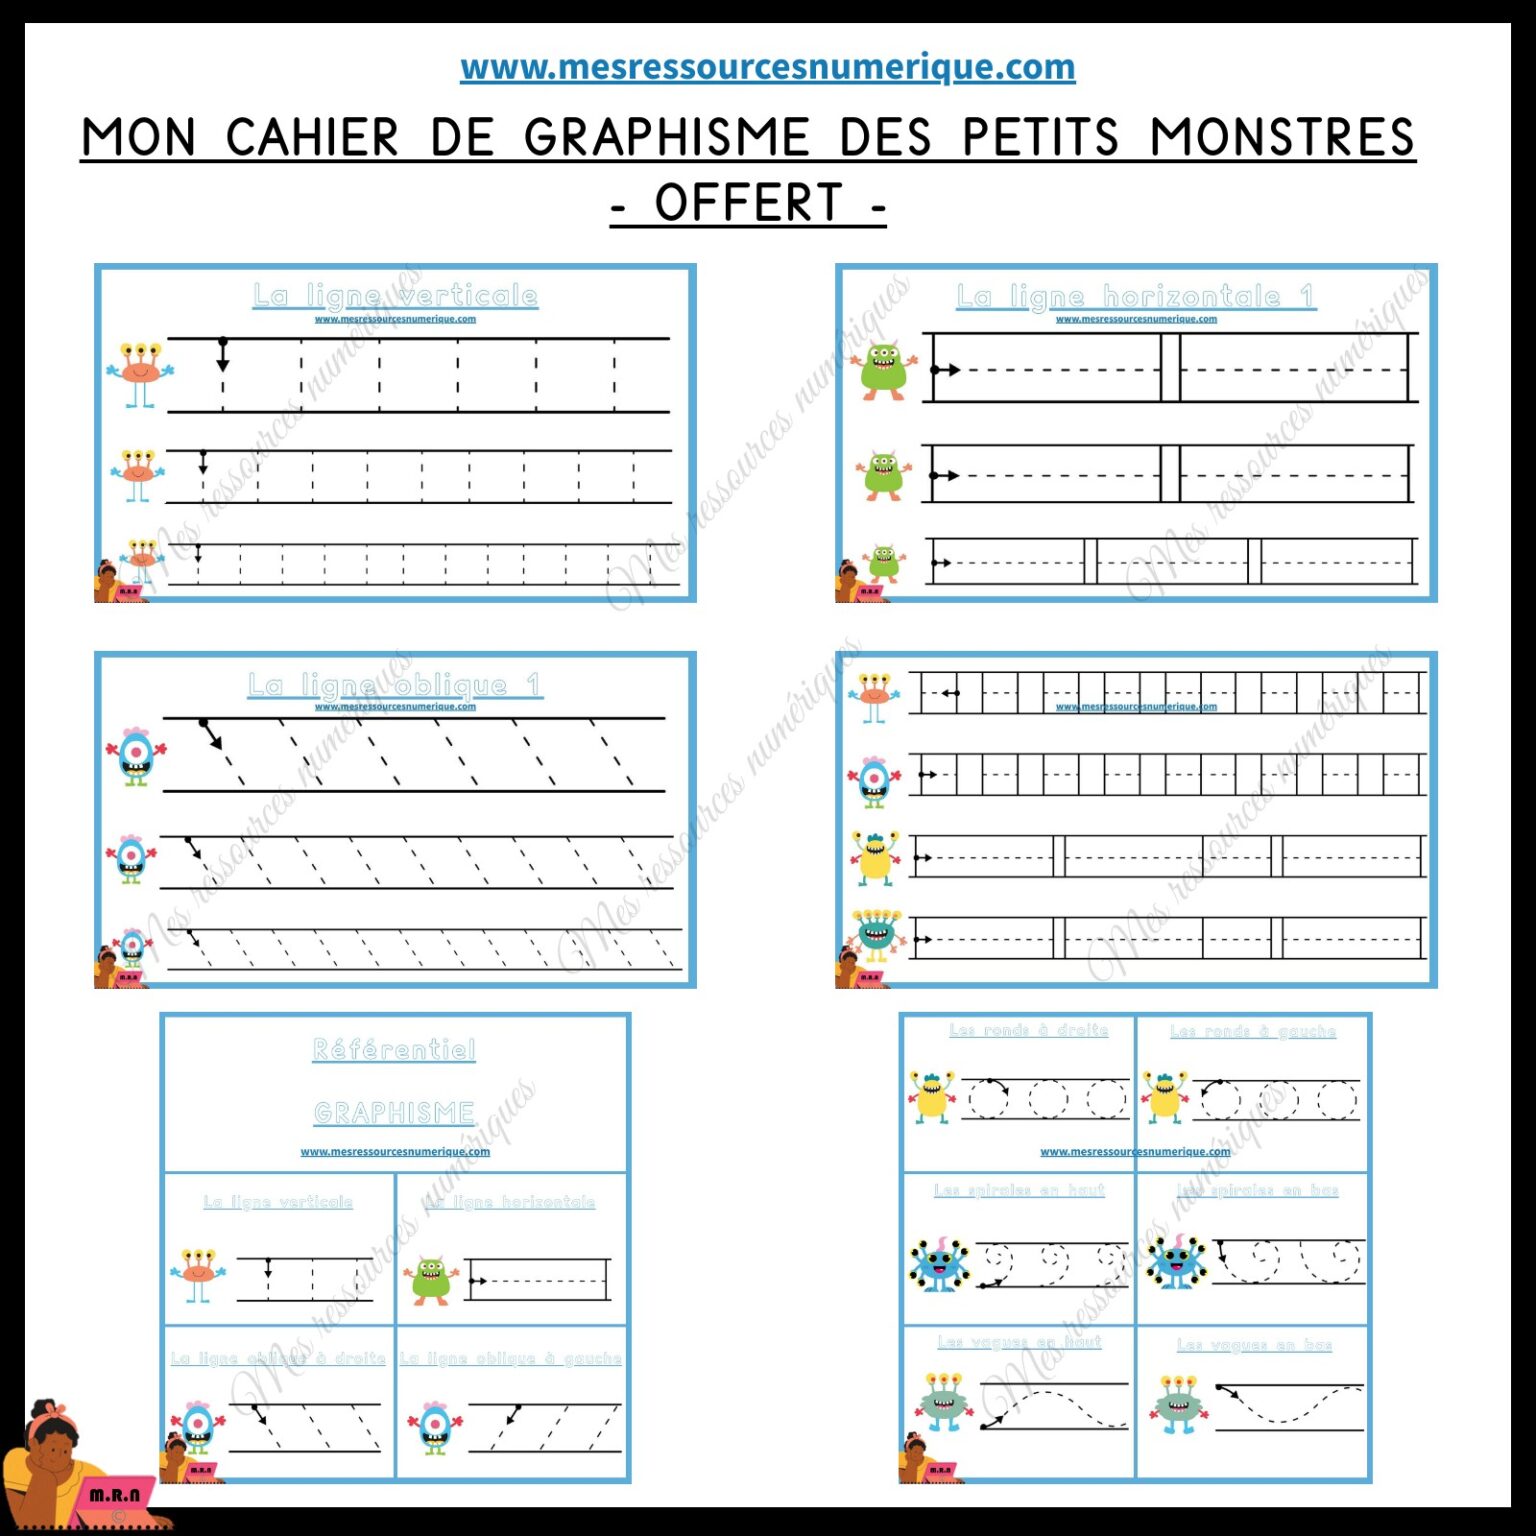 MON CAHIER DE GRAPHISME DES PETITS MONSTRES (OFFERT)